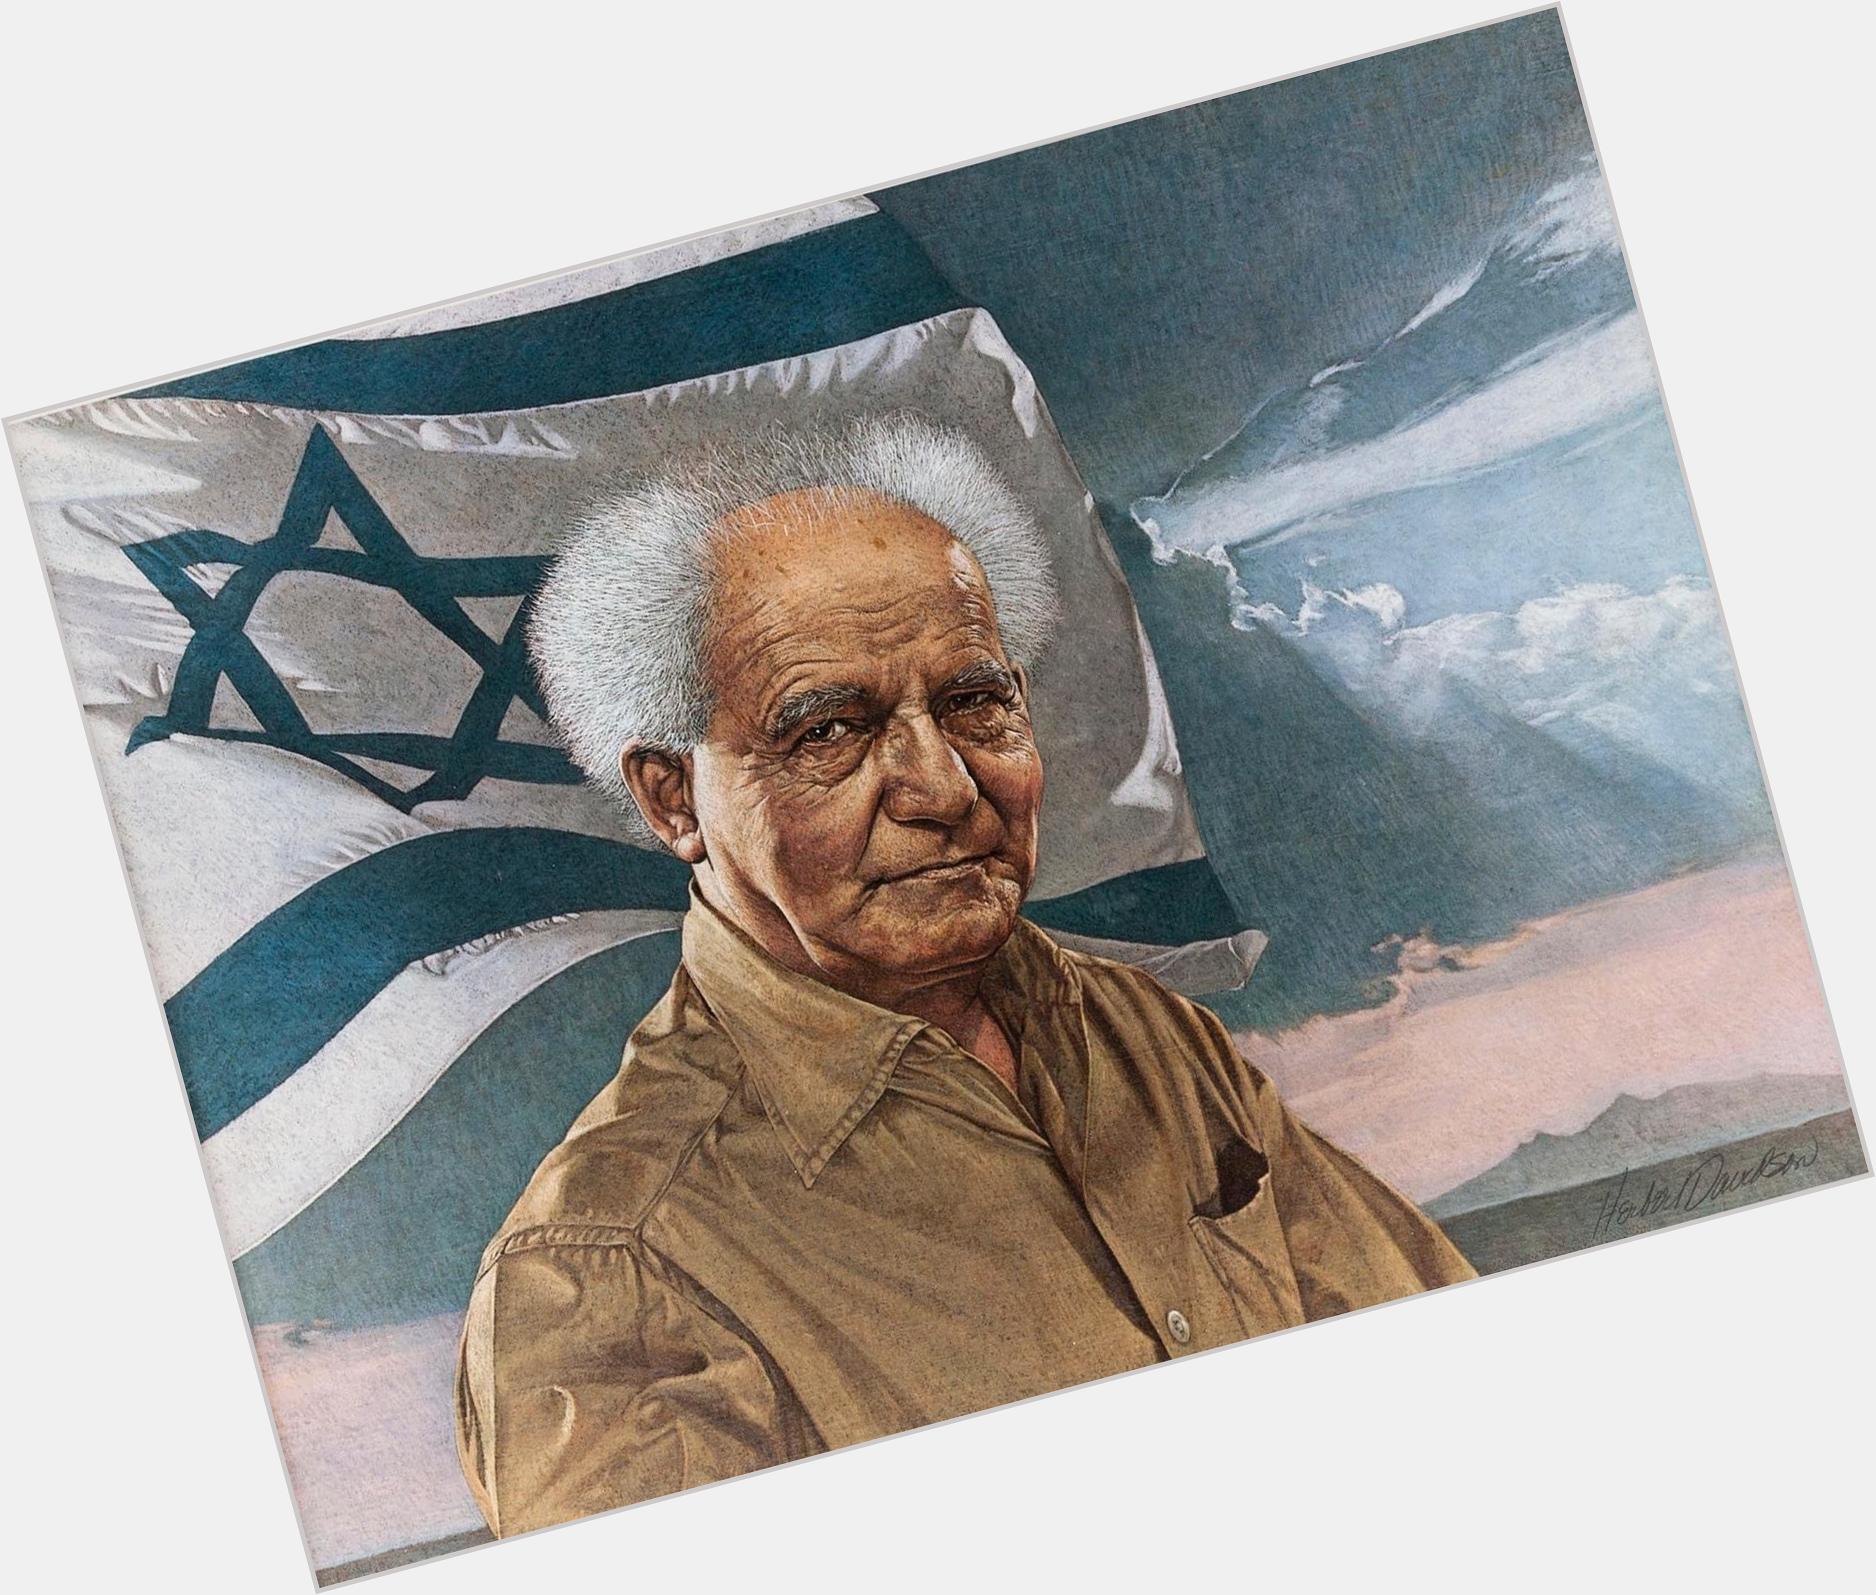 <a href="/hot-men/david-ben-gurion/where-dating-news-photos">David Ben Gurion</a> Average body,  grey hair & hairstyles